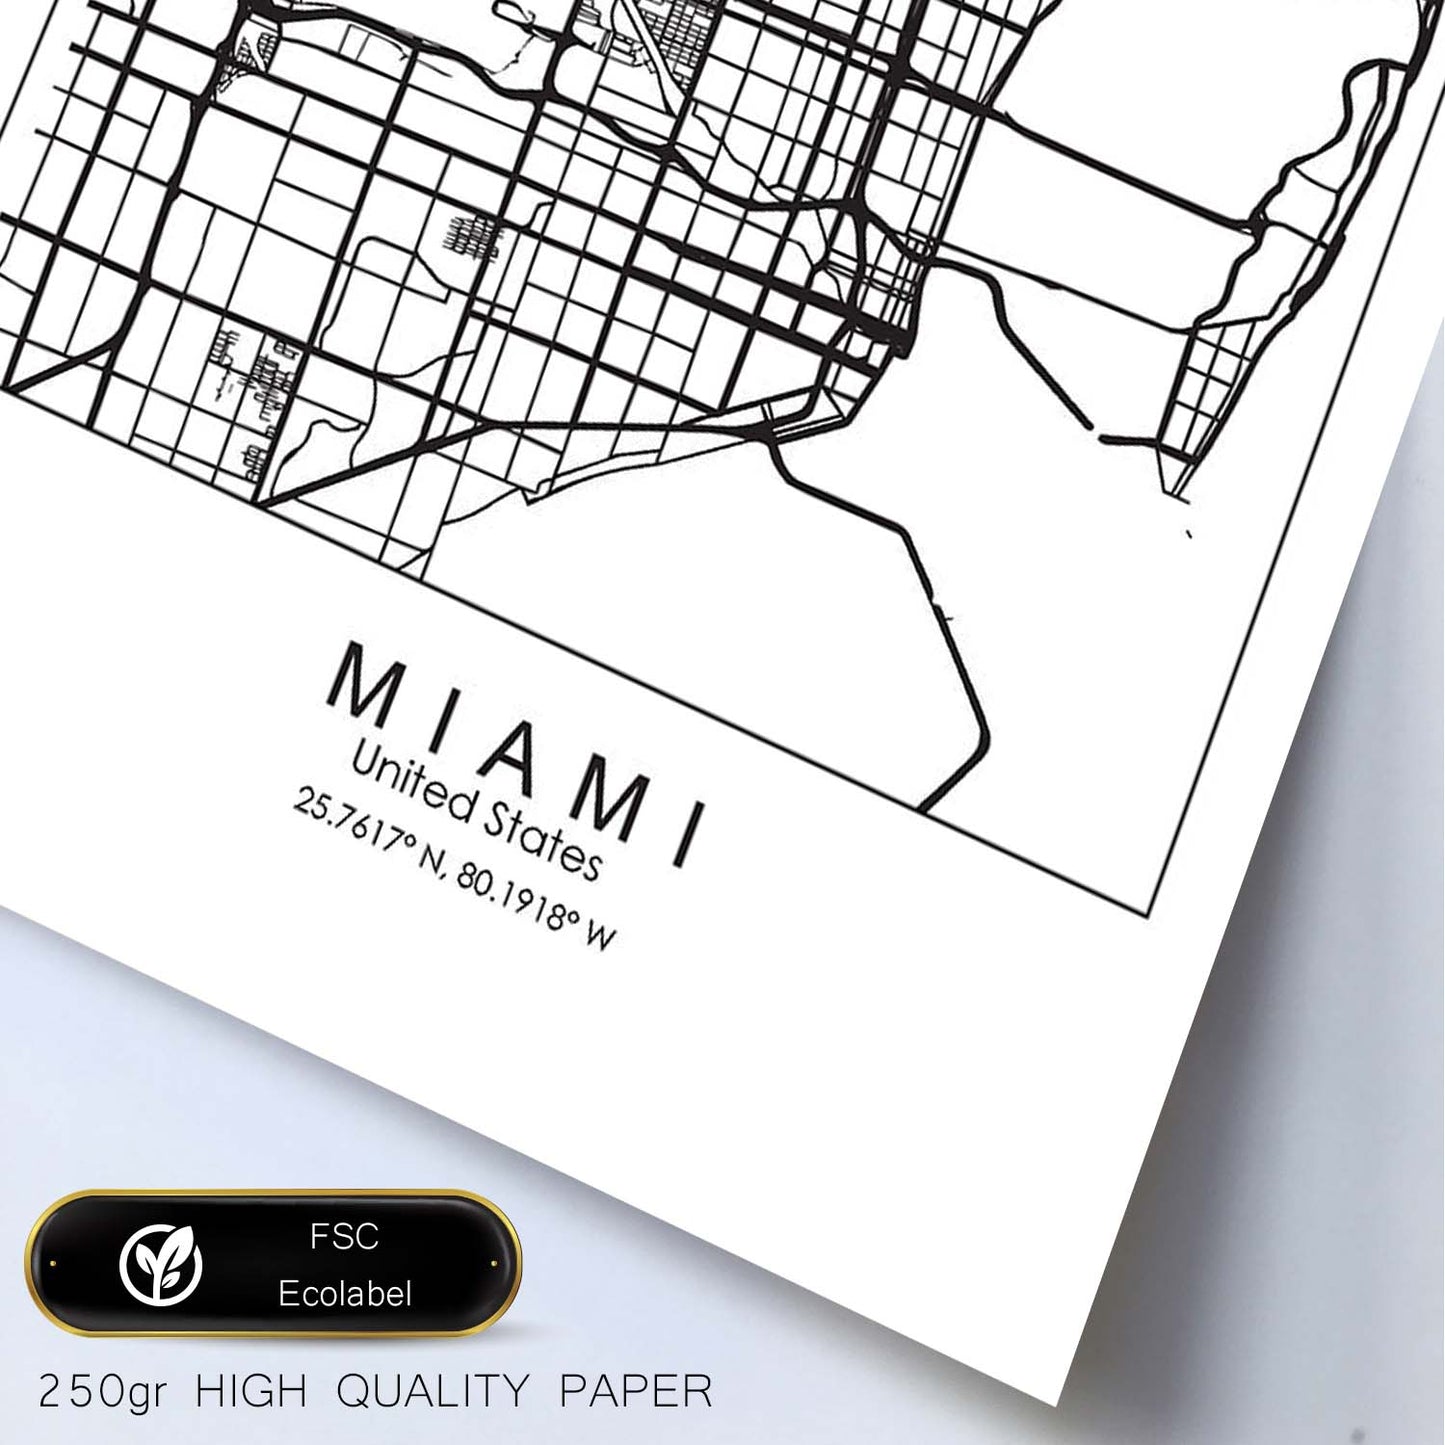 Poster con mapa de Miami. Lámina de Estados Unidos, con imágenes de mapas y carreteras-Artwork-Nacnic-Nacnic Estudio SL